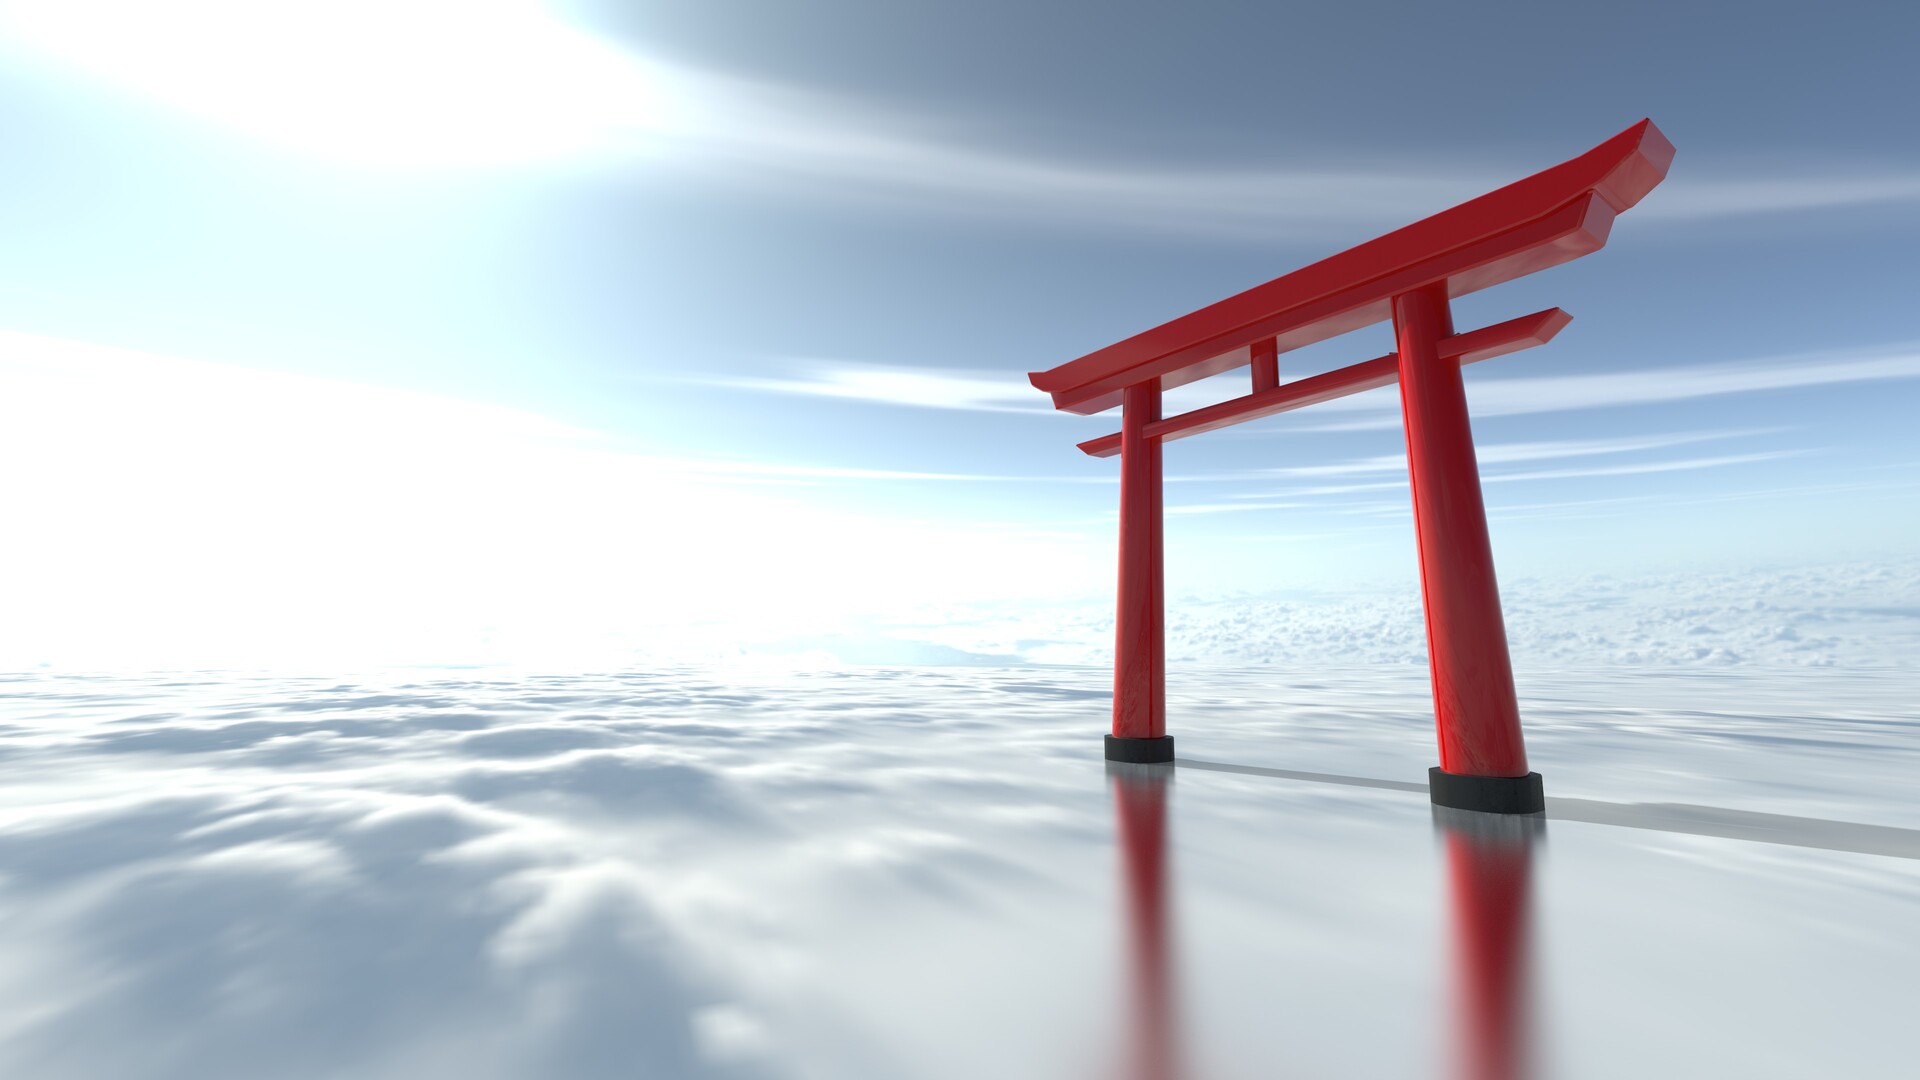 Cổng Torii: Cổng Torii là biểu tượng linh thiêng của Nhật Bản, được xây dựng để đánh dấu sự chuyển từ thế giới vật chất sang thế giới tinh thần. Cùng đến với hình ảnh này để khám phá sự tinh tế và độc đáo trong thiết kế của người Nhật.